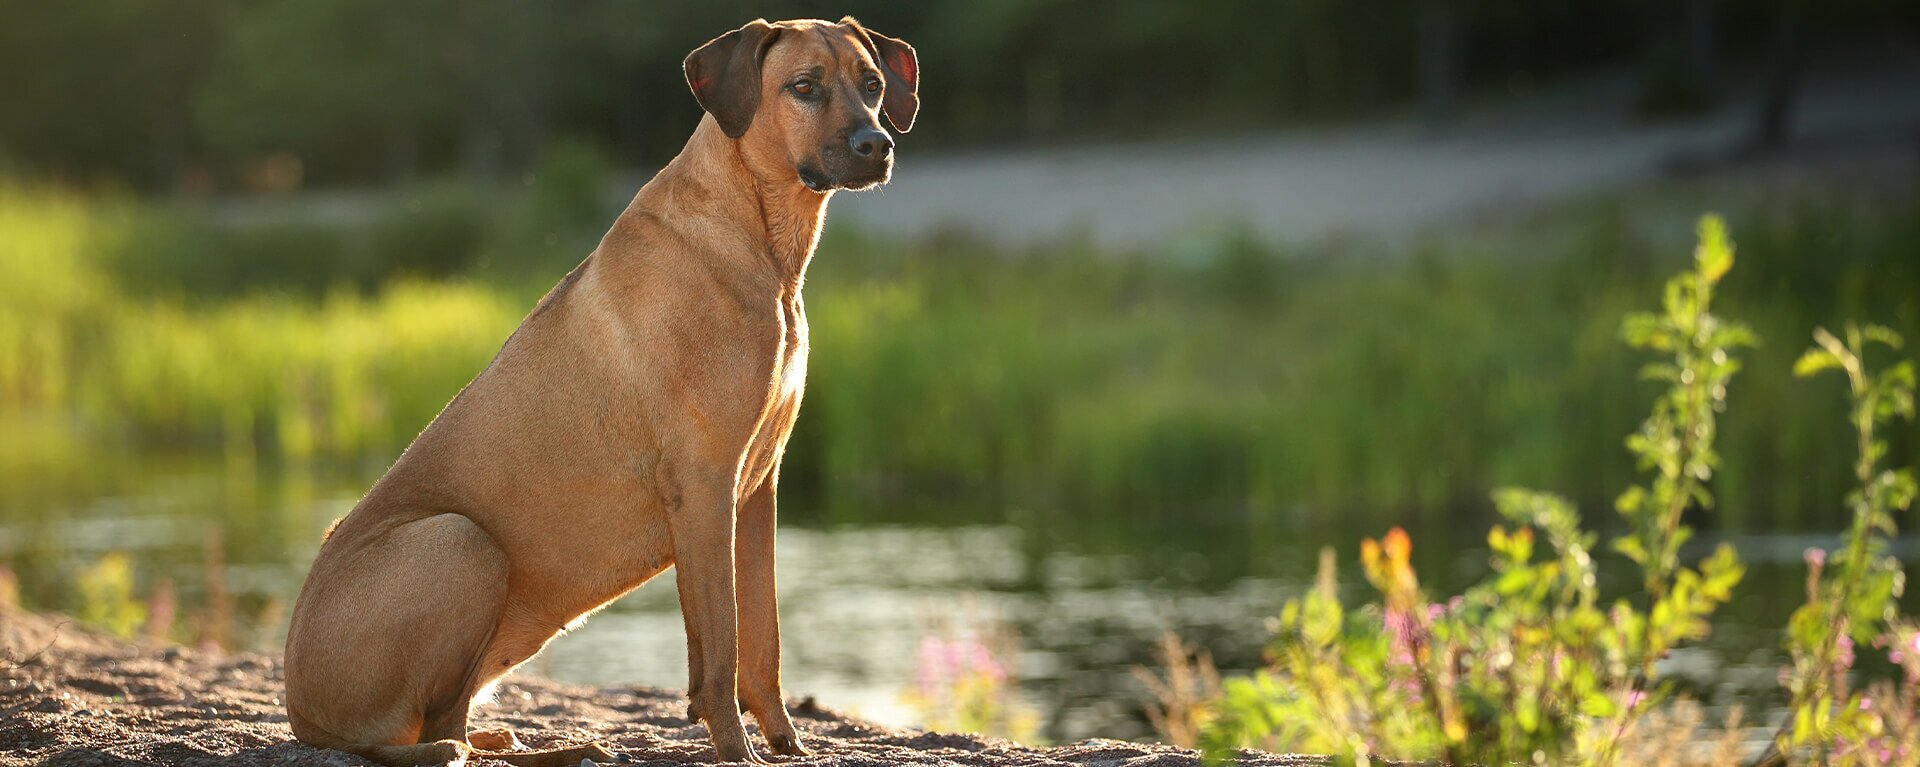 Крупные породы собак: фото и описания, советы по уходу - Полная информация и рекомендации от экспертов [Собаки Dogs]